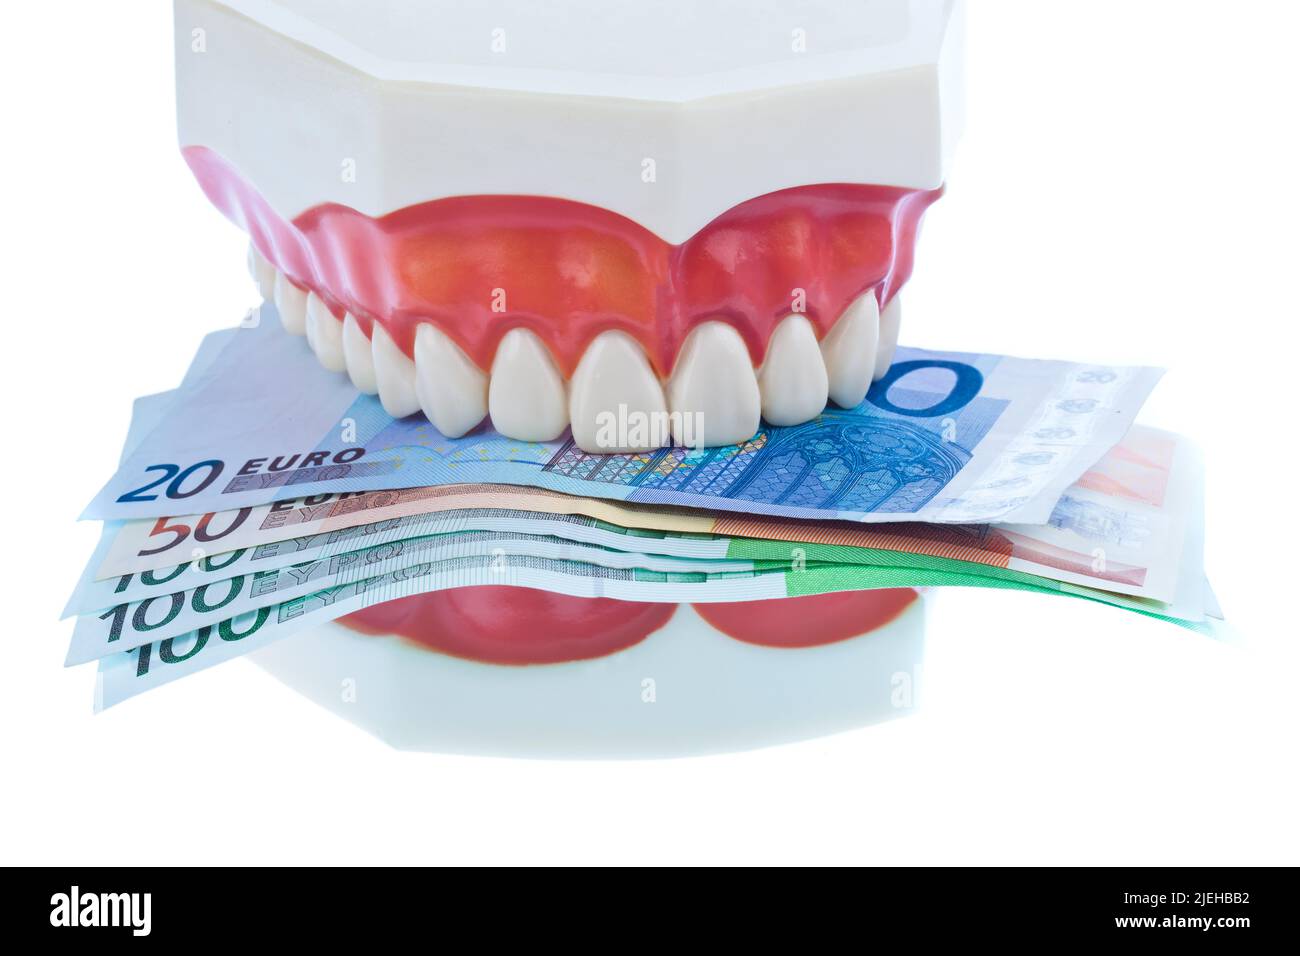 Ein Zahnmodell beim Zahnarzt mit Euroscheinen. Kosten für Gesundheit. Foto Stock